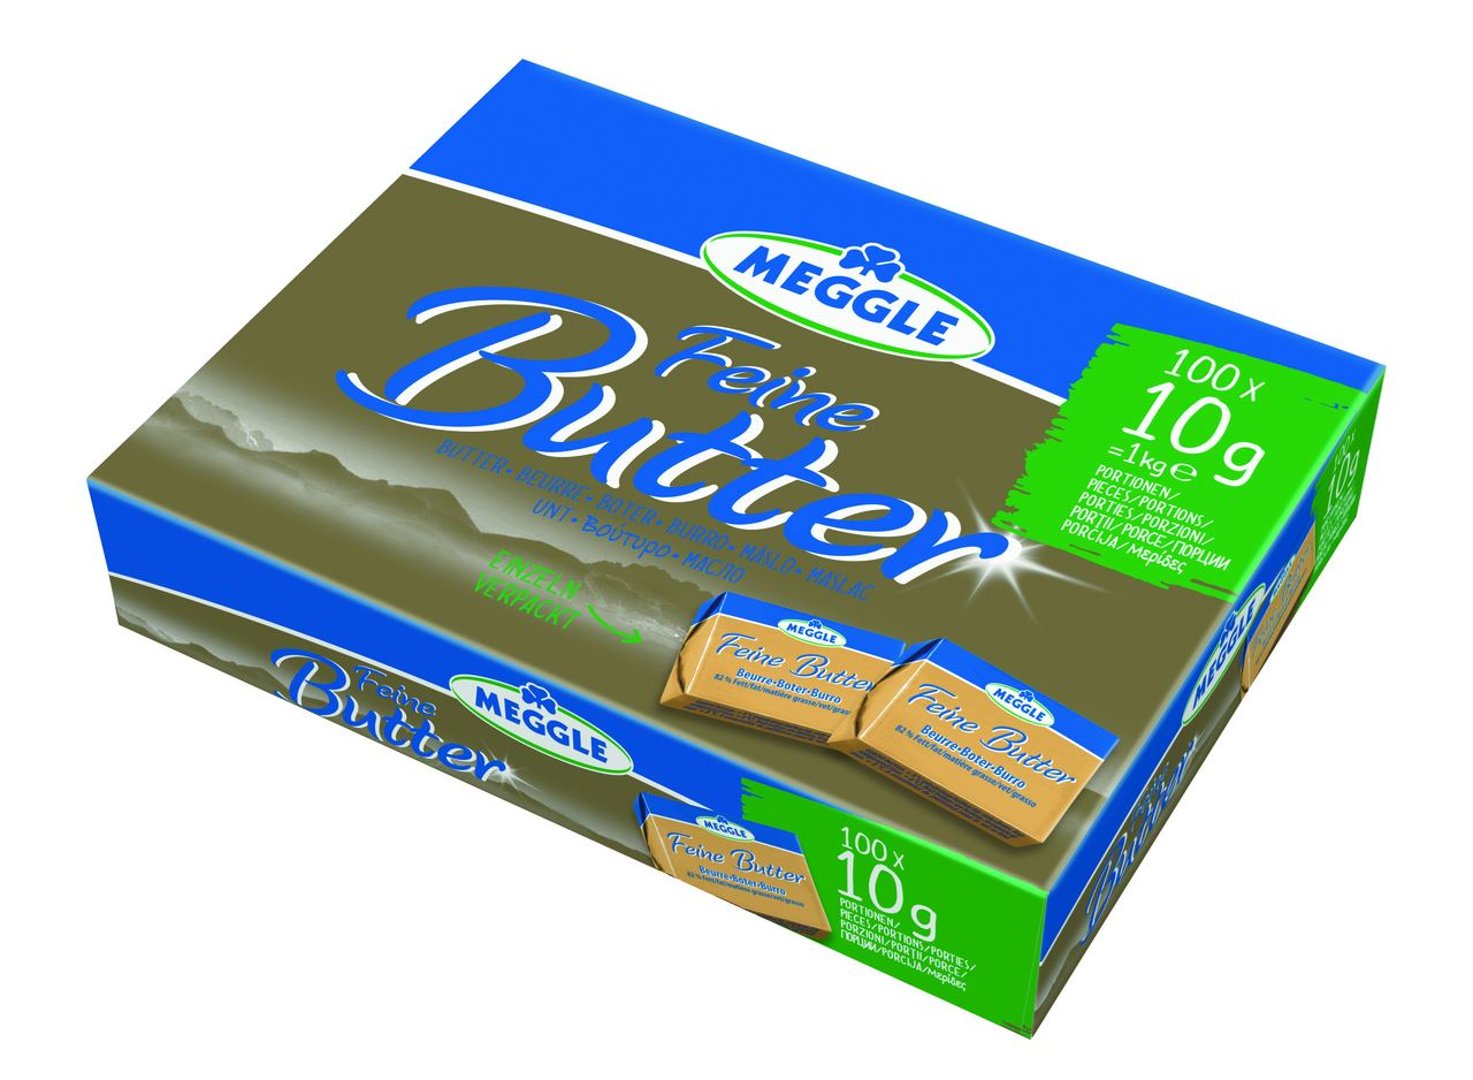 Meggle - Feine Butter, 82 % Fett, 100 Einzelportionen à 10 g - 1 kg Karton